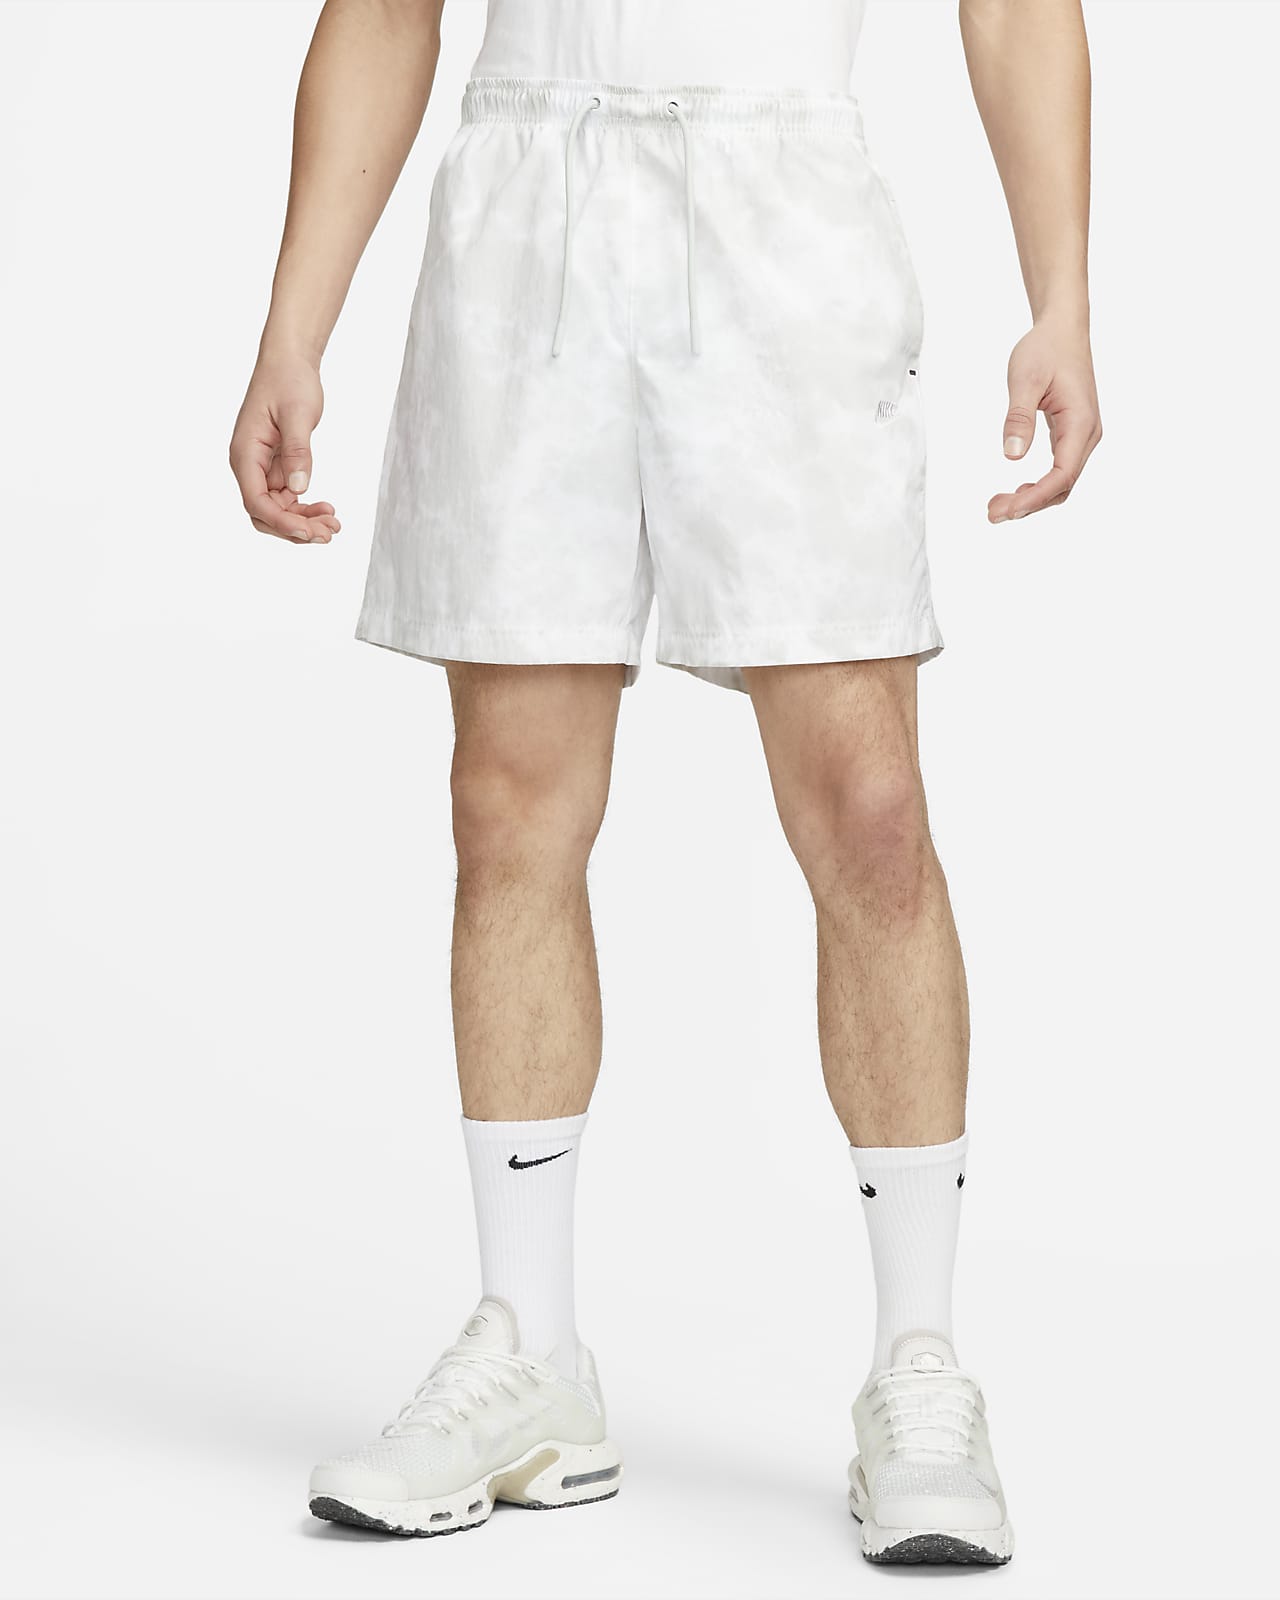 Mono Eliminar embarazada Nike Sportswear Tech Pack Men's Woven Shorts. Nike.com